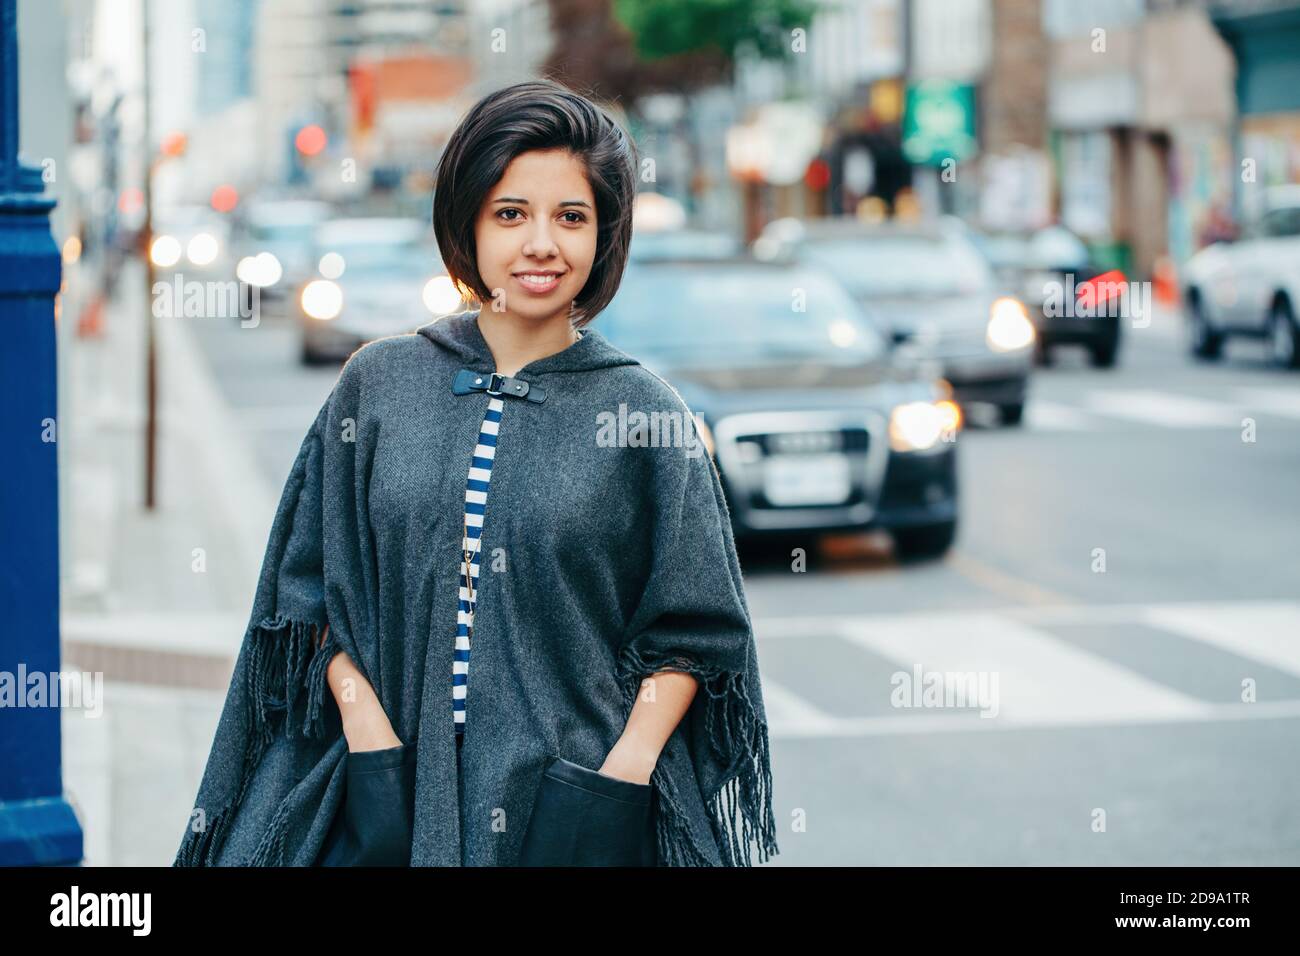 Belle latine jeune femme en gris élégant poncho avec frange dans la rue urbaine. Mode et style urbain. Jolie femme hispanique brune Banque D'Images